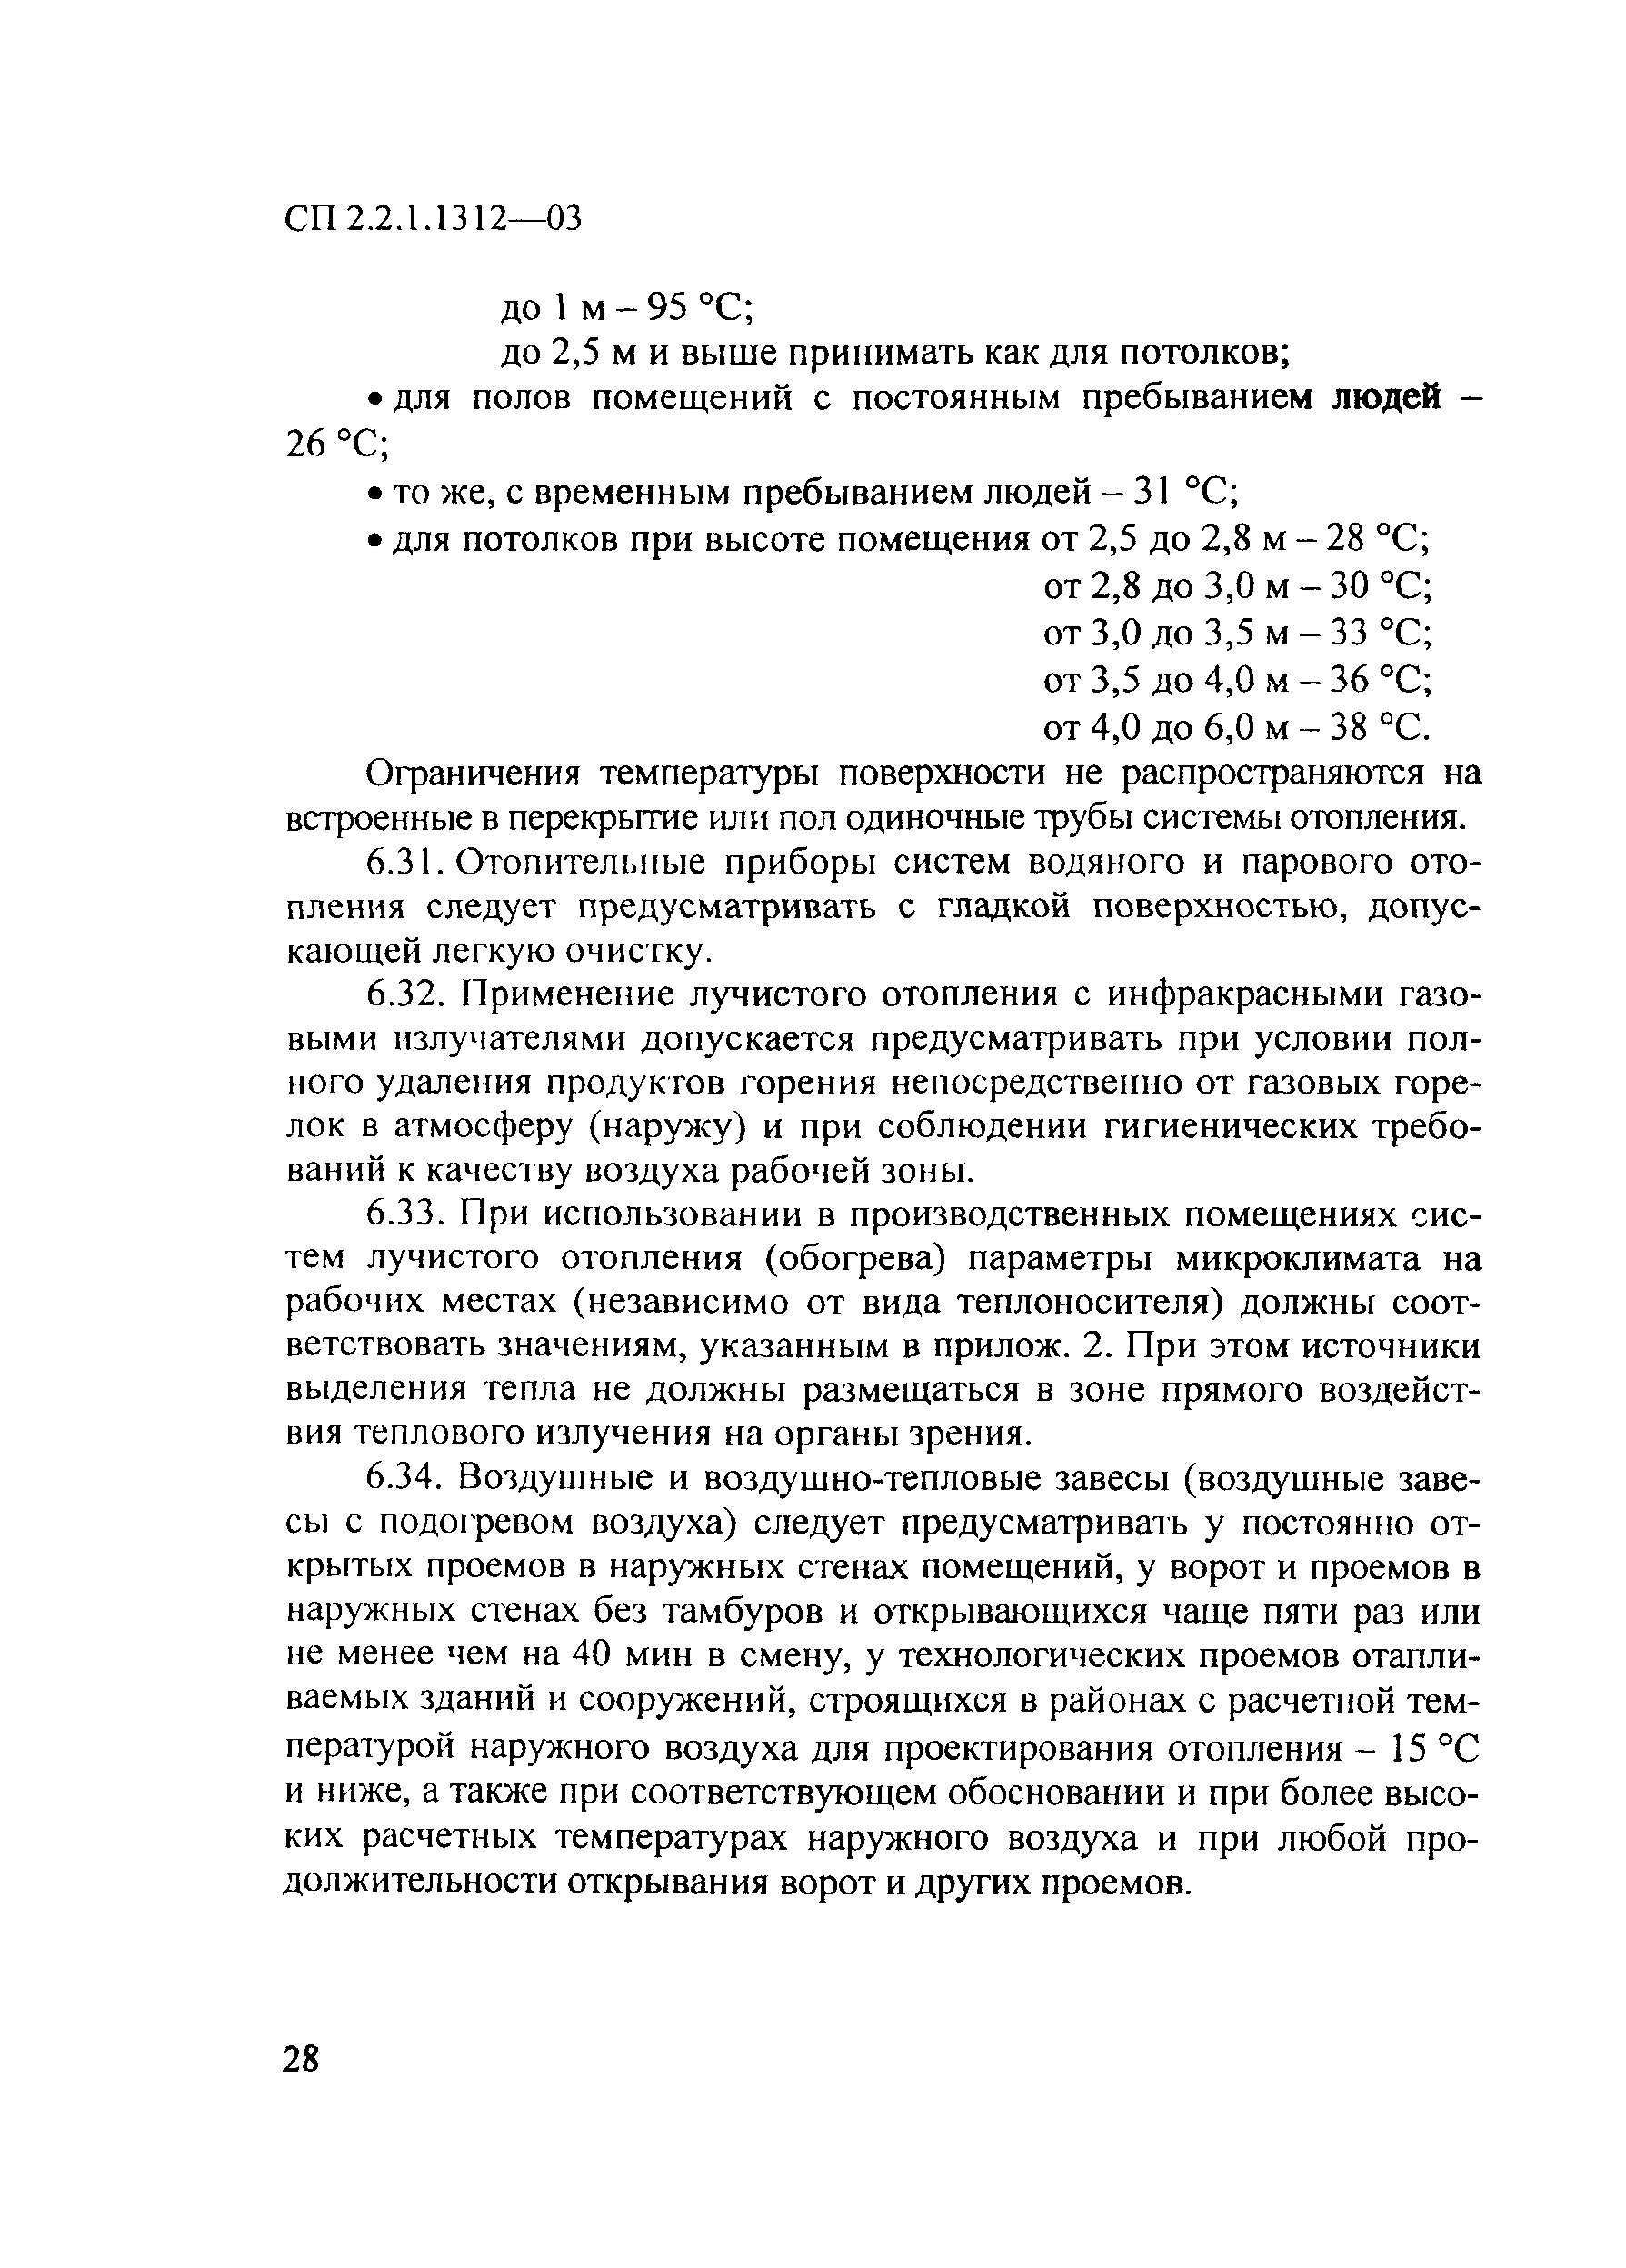 СП 2.2.1.1312-03